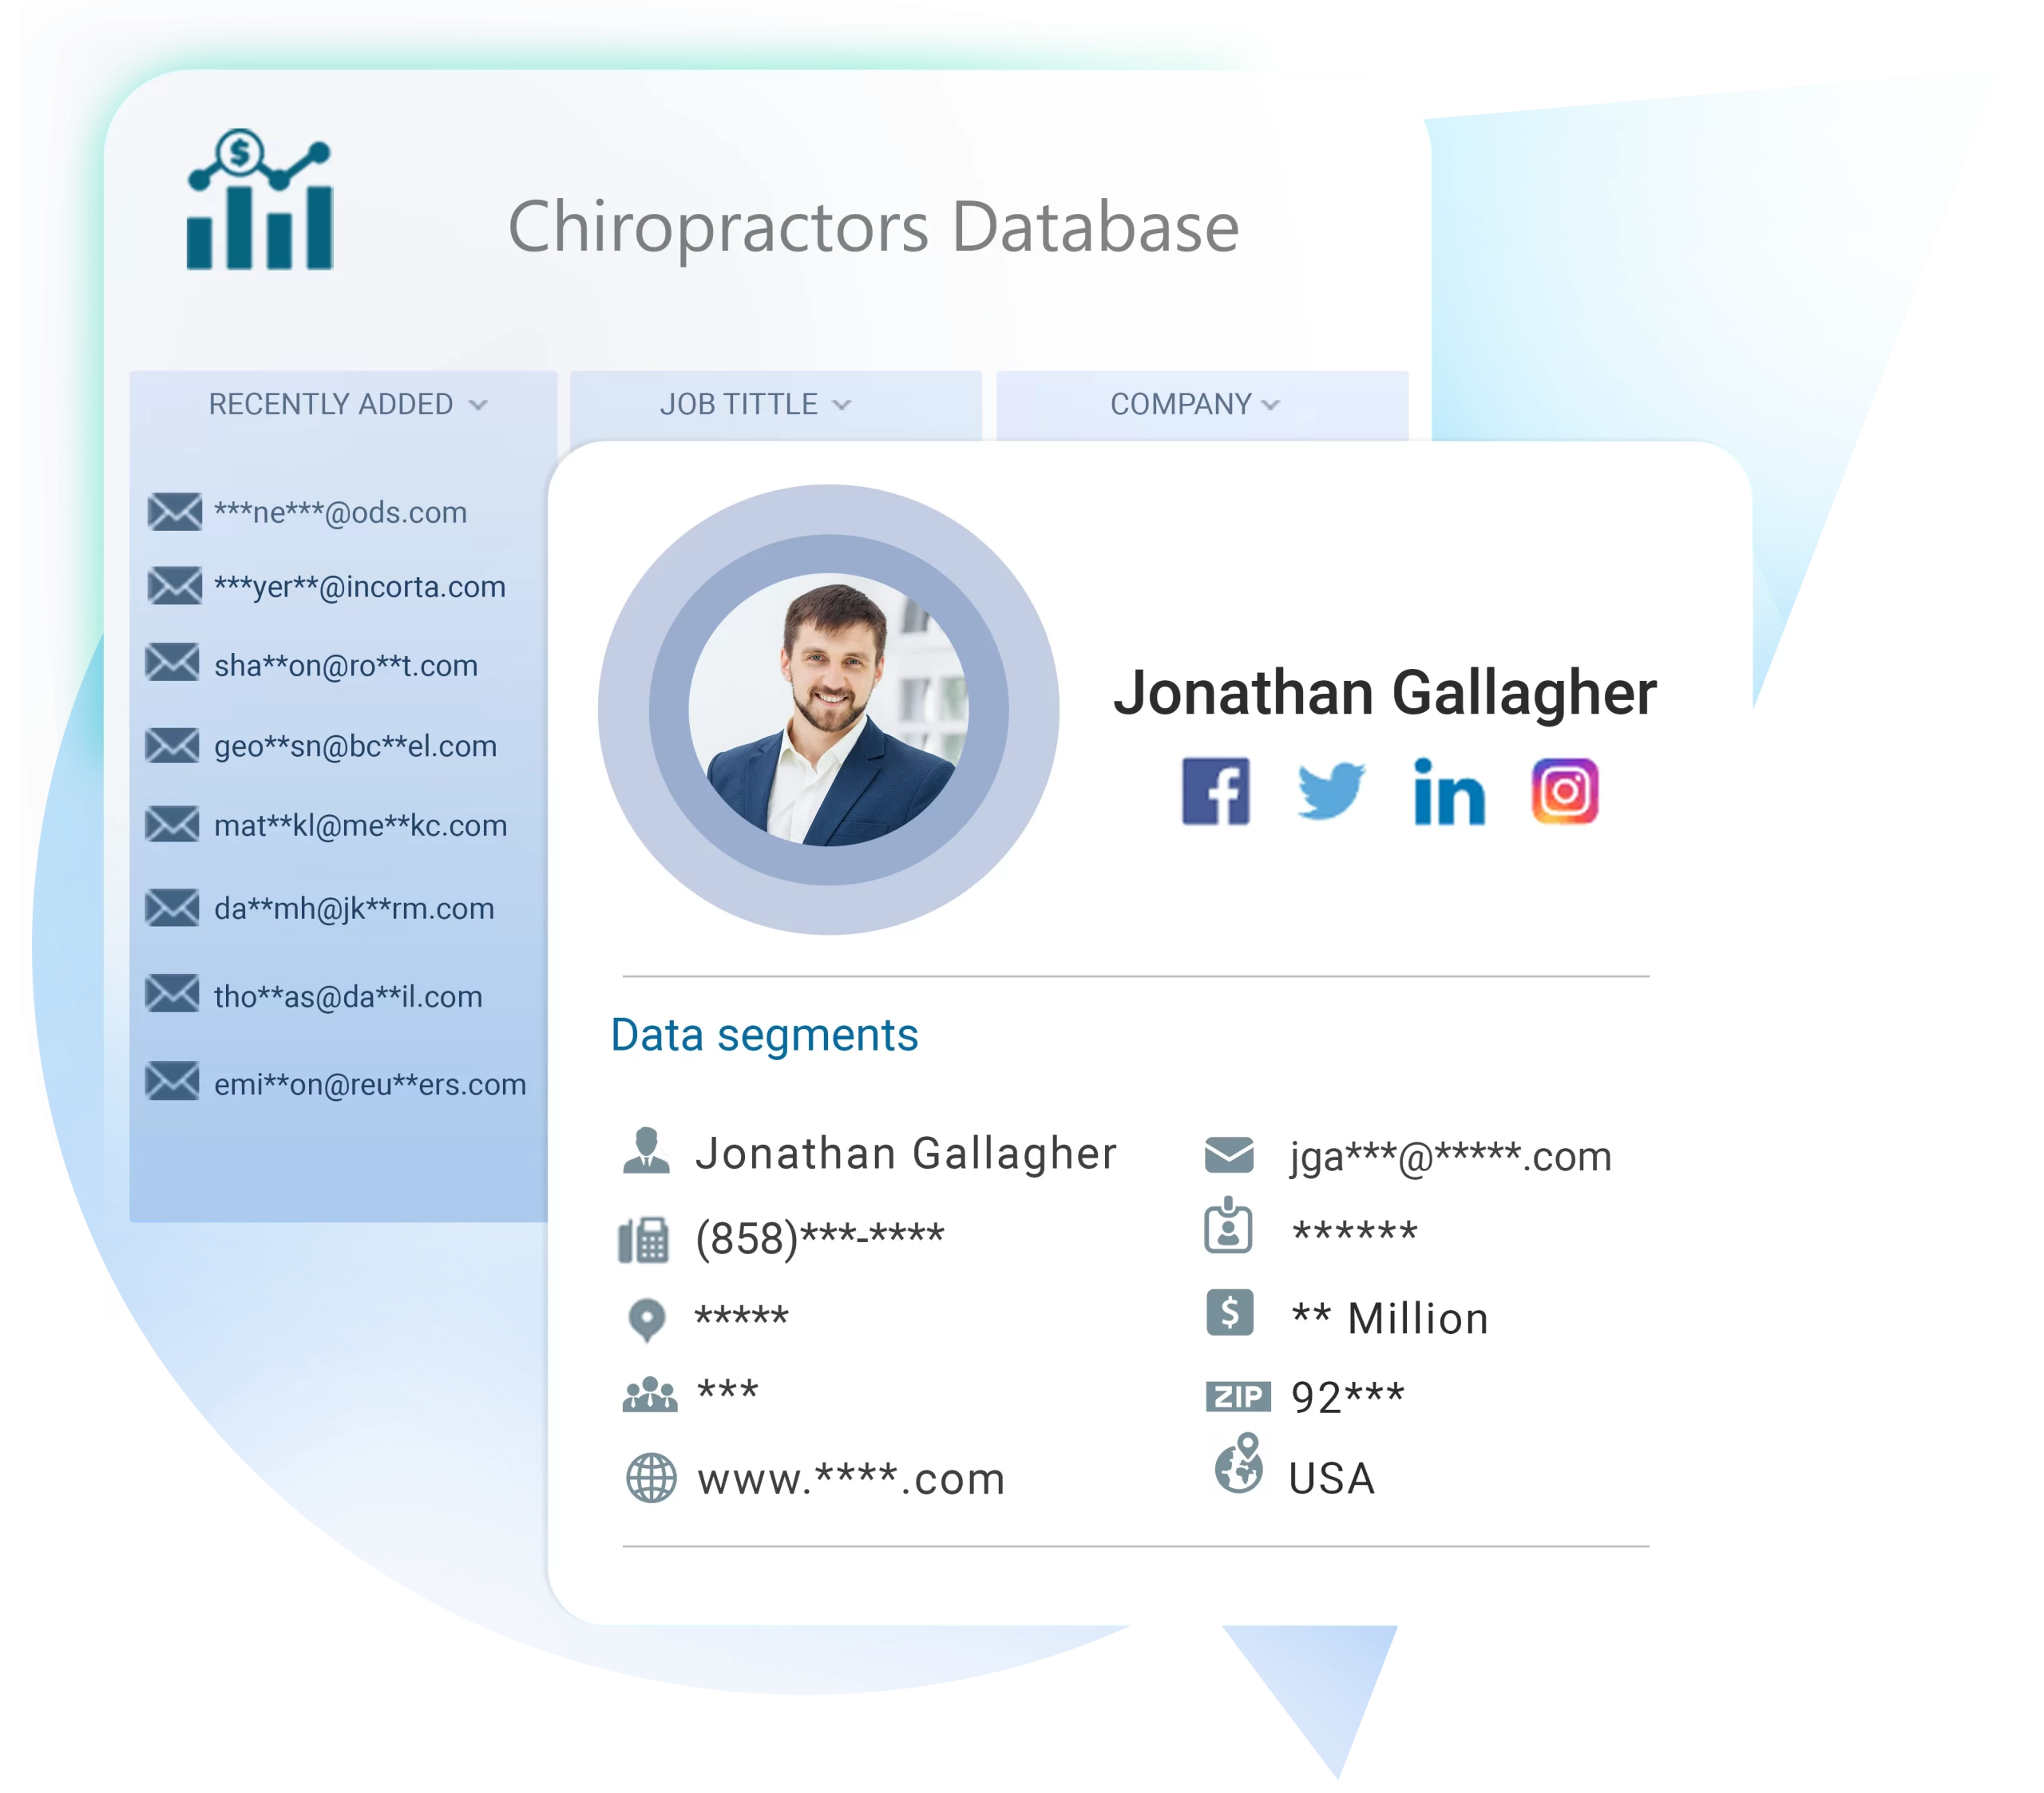 Chiropractors-Database